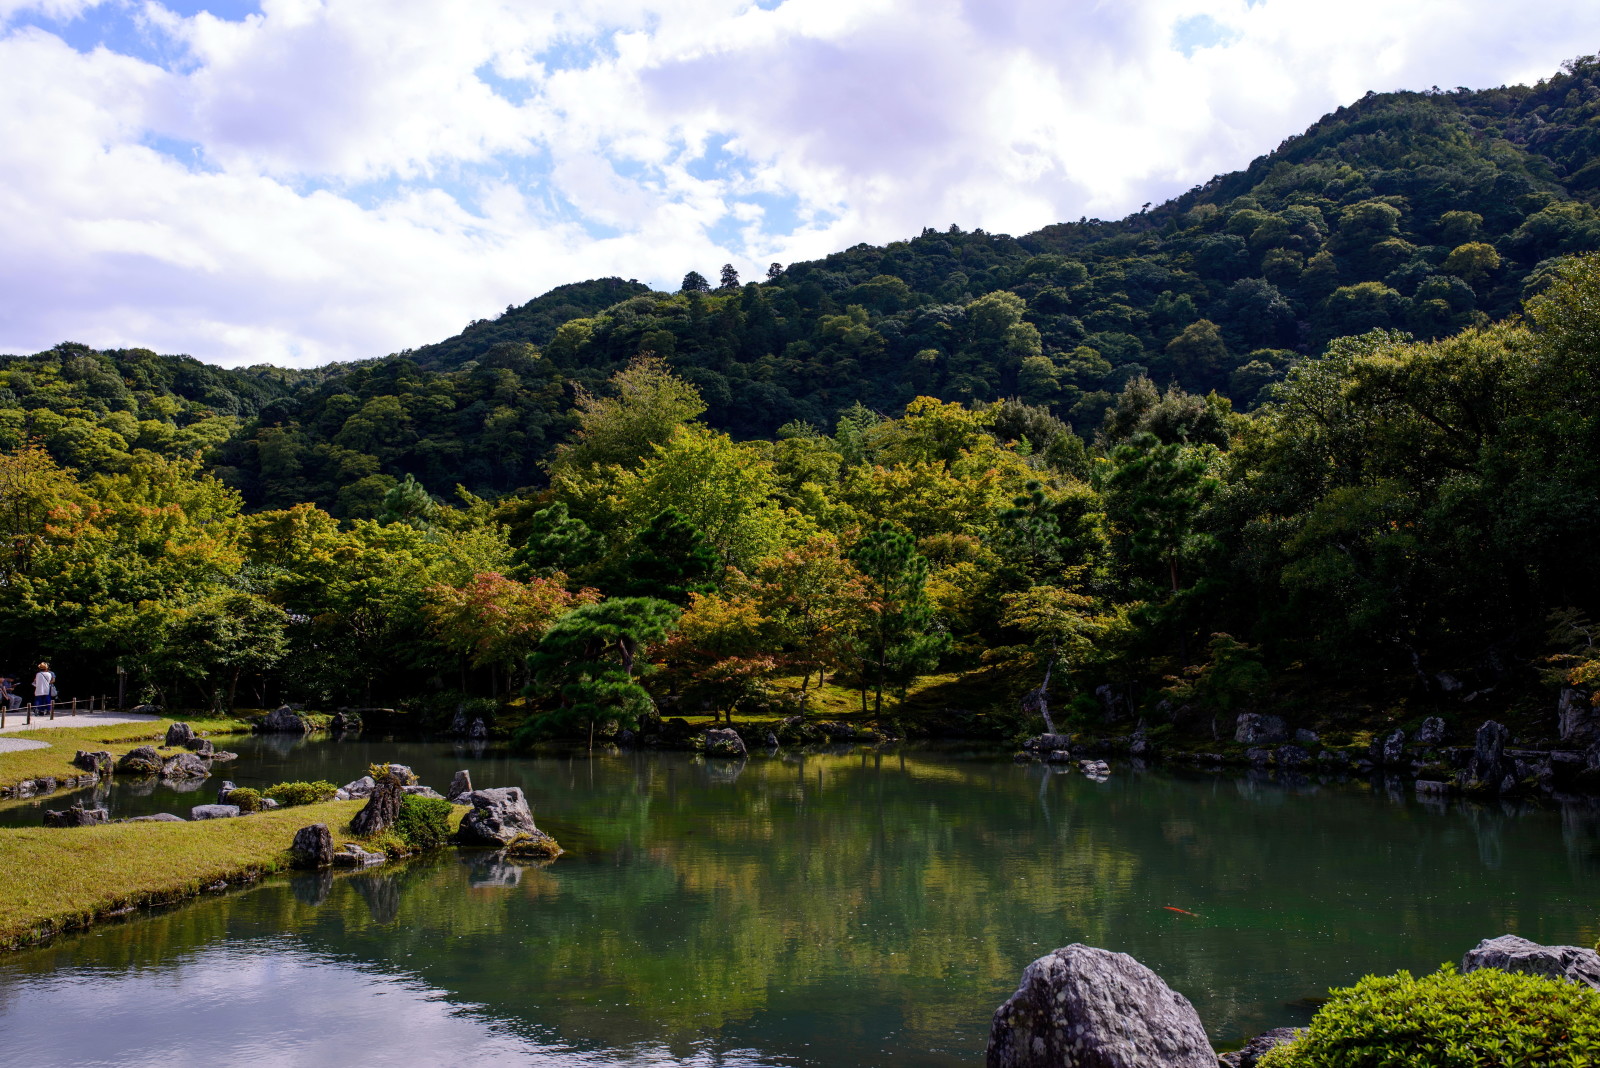 สวน, หิน, ต้นไม้, ประเทศญี่ปุ่น, บ่อน้ำ